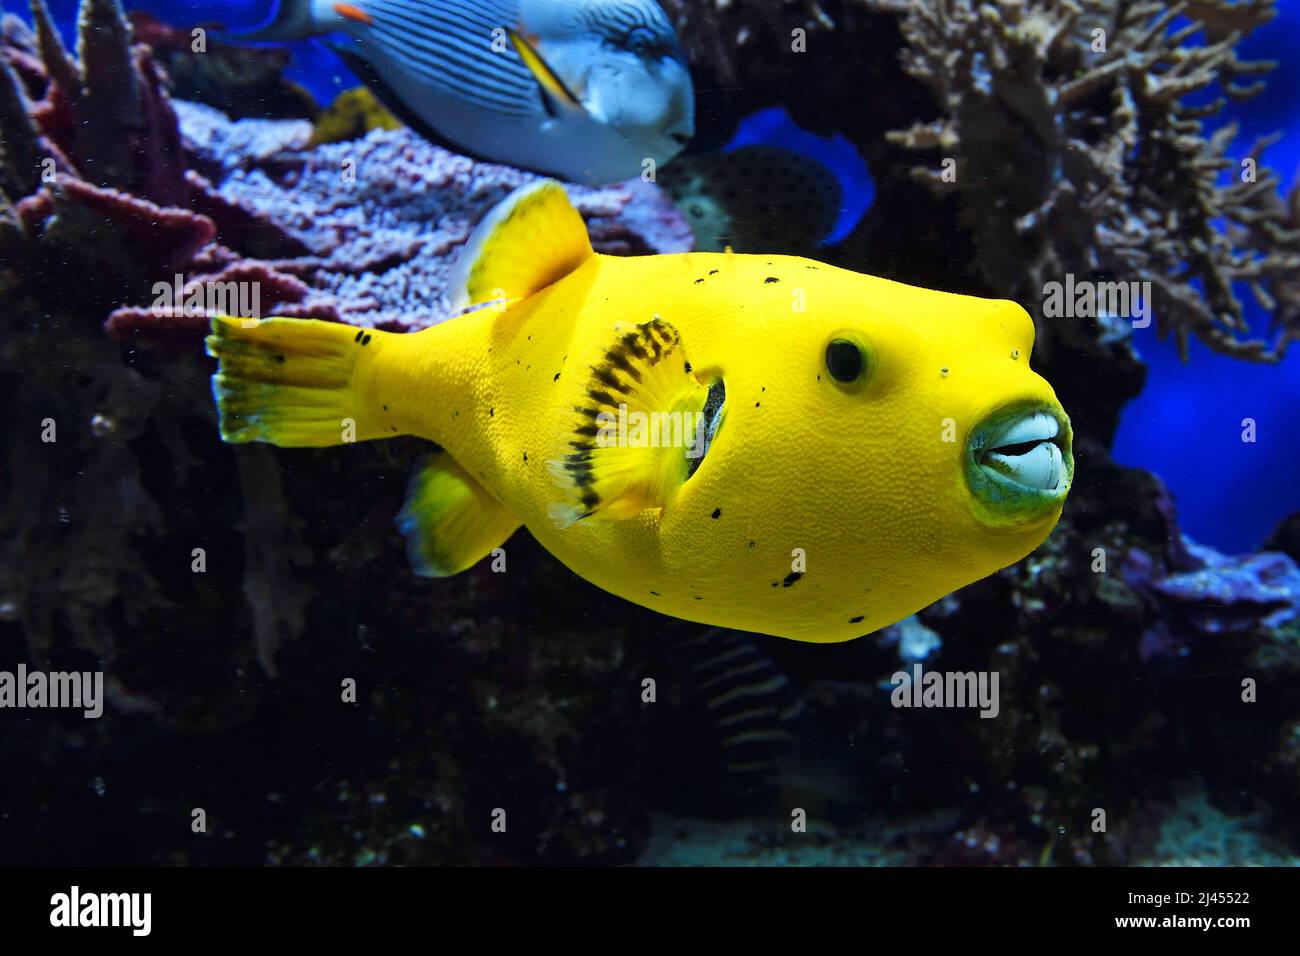 Arothron nigropunctatus, seltene gelbe Farbvariante, Aquarium,Ozeanographisches Museum Monaco, Monaco Ville, Monaco Stock Photo